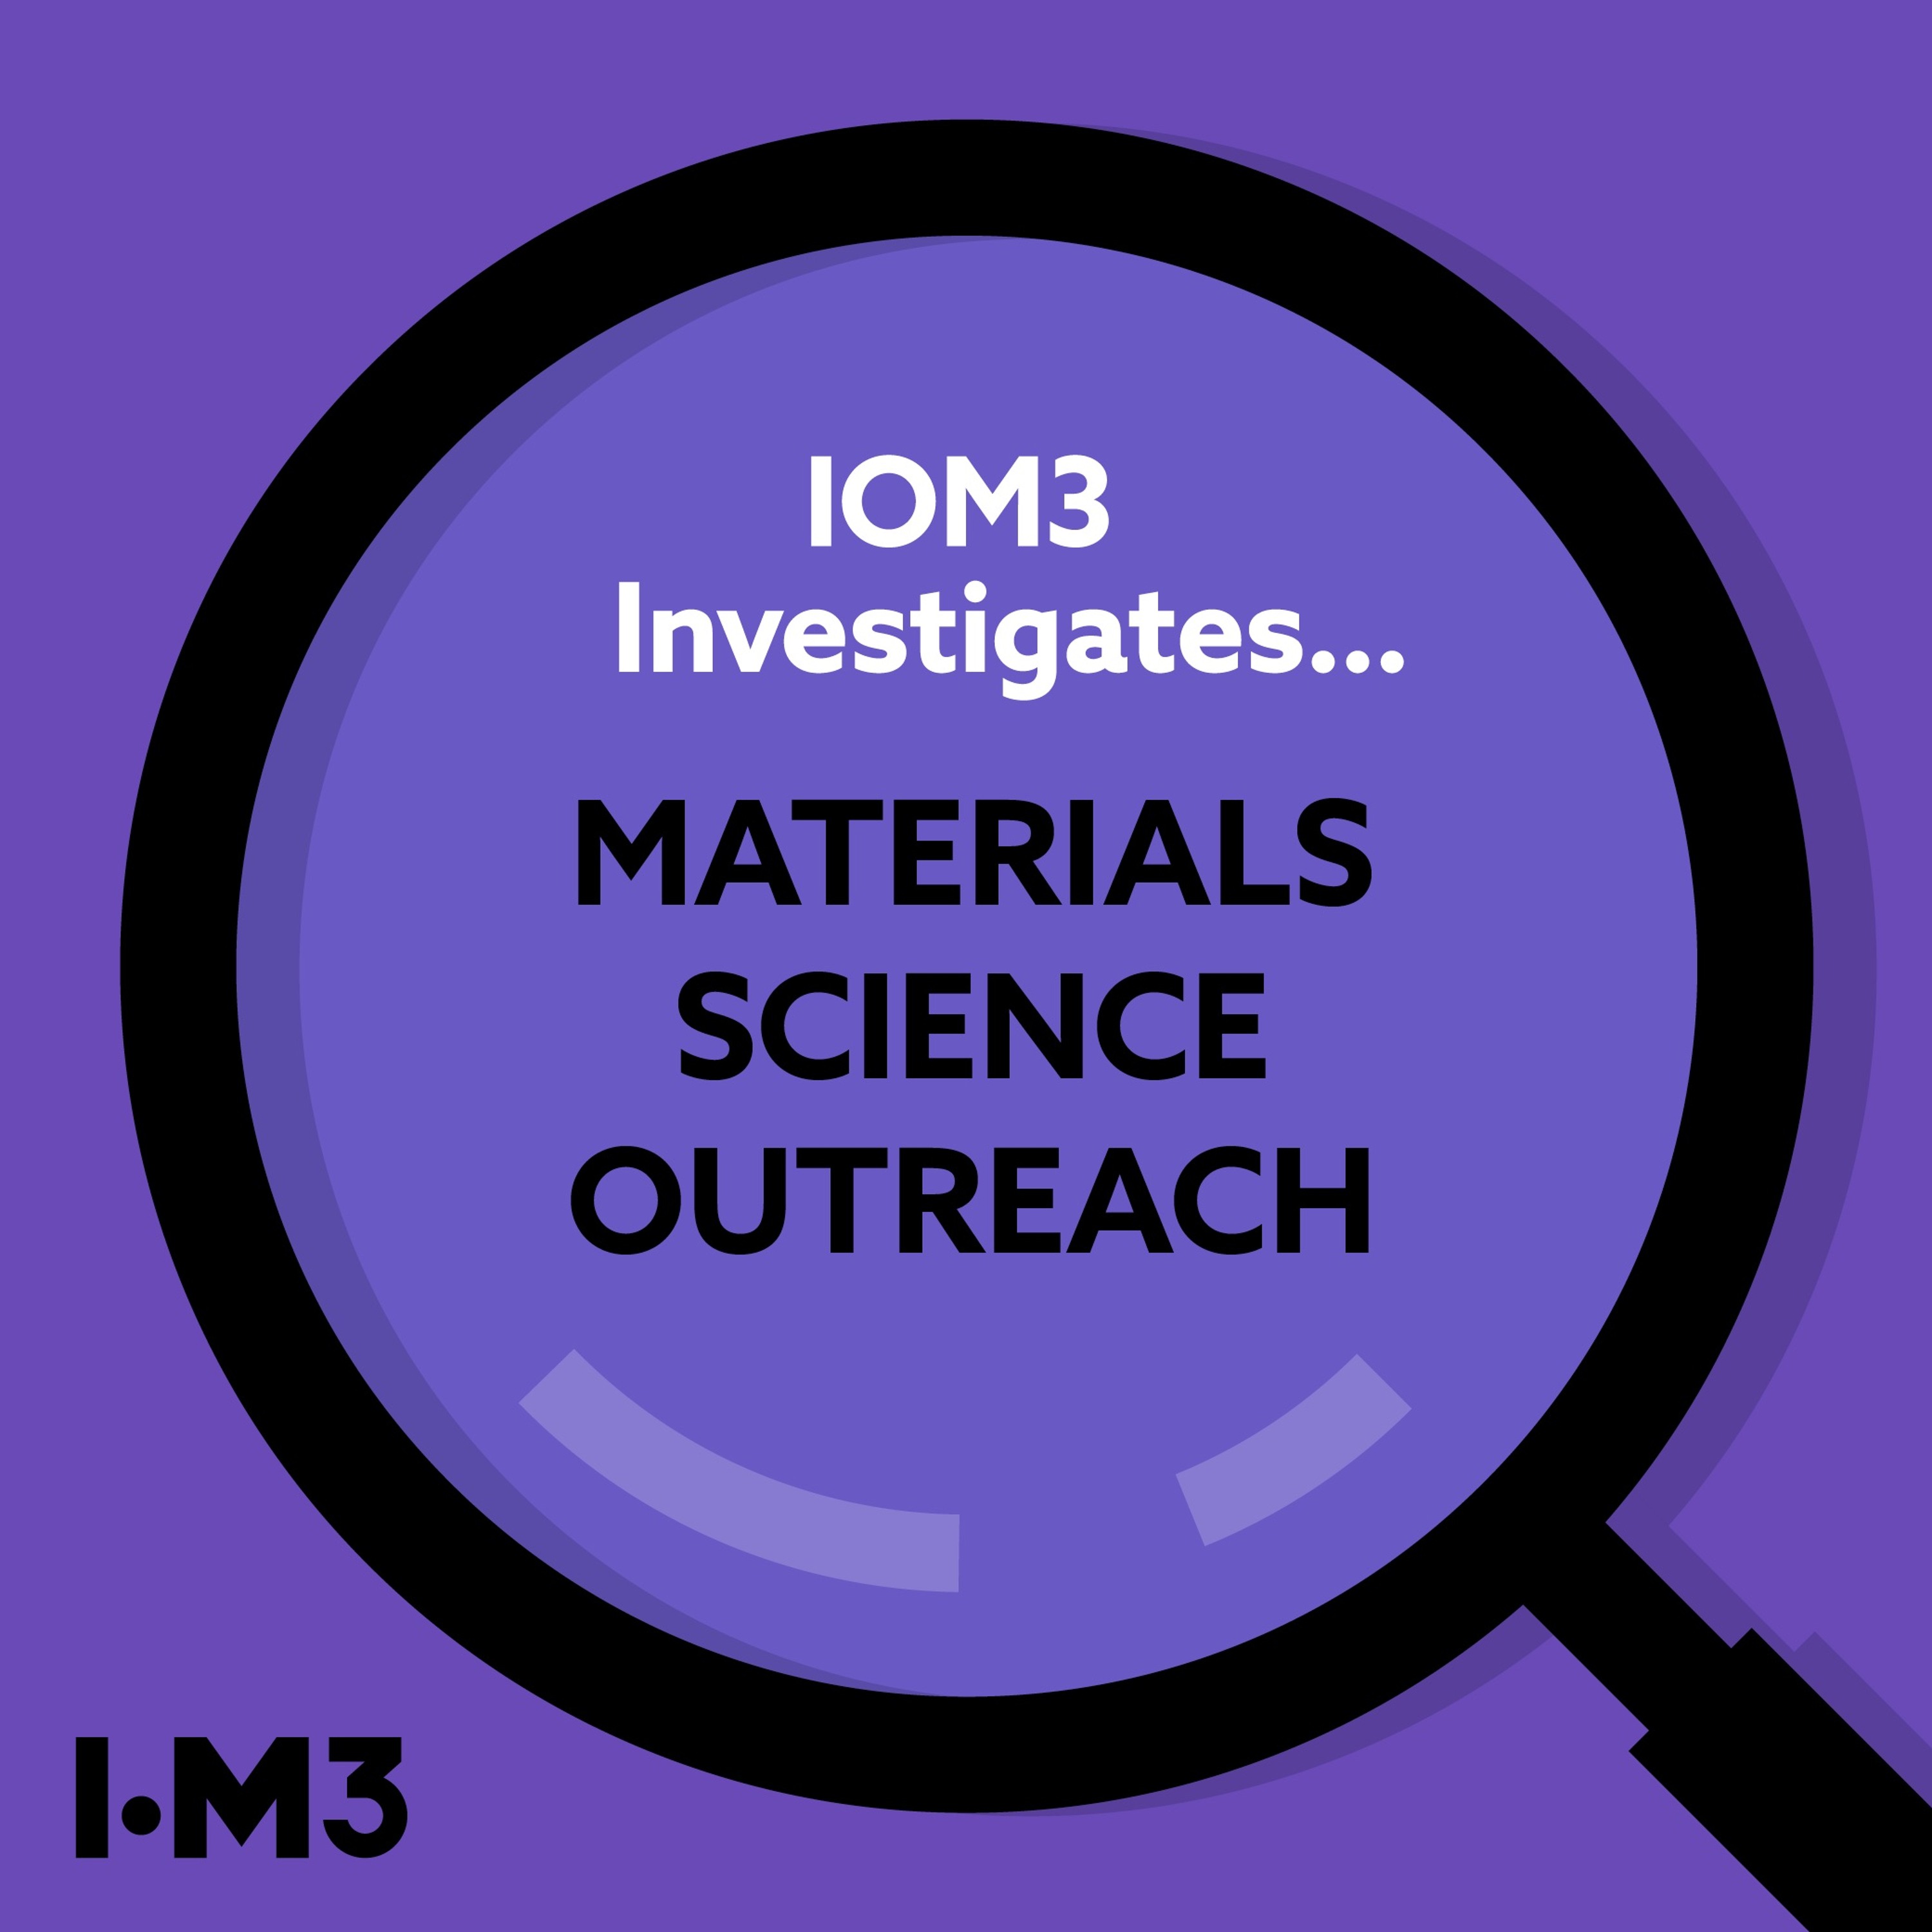 IOM3 Investigates...Materials science outreach